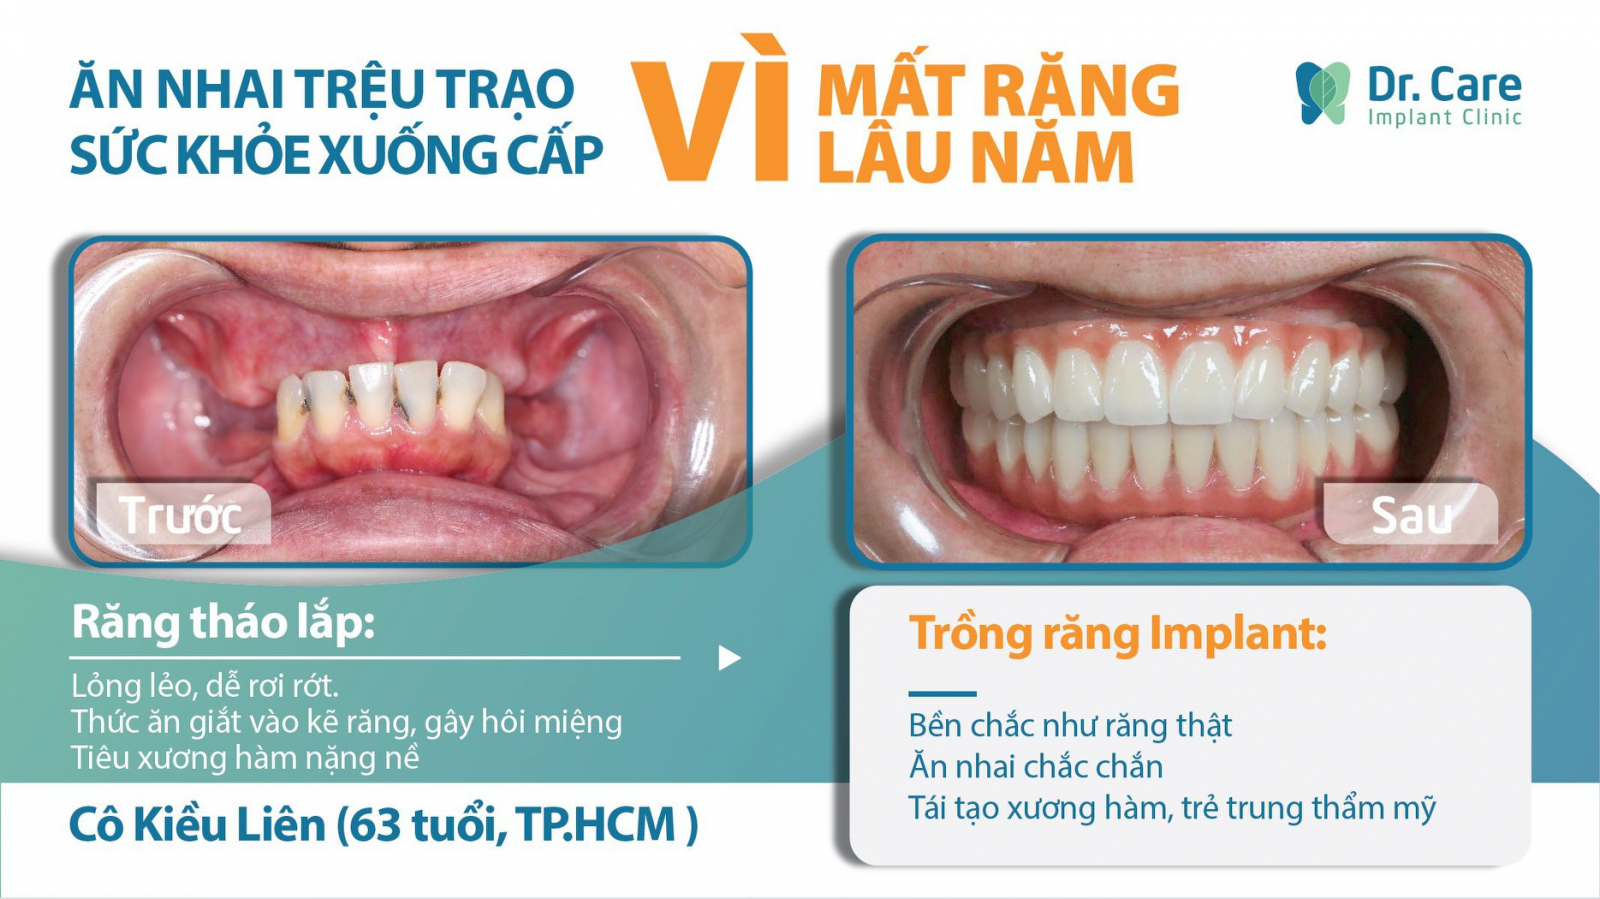 Ngăn chặn tiêu xương hàm, khắc phục lệch mặt do mất răng